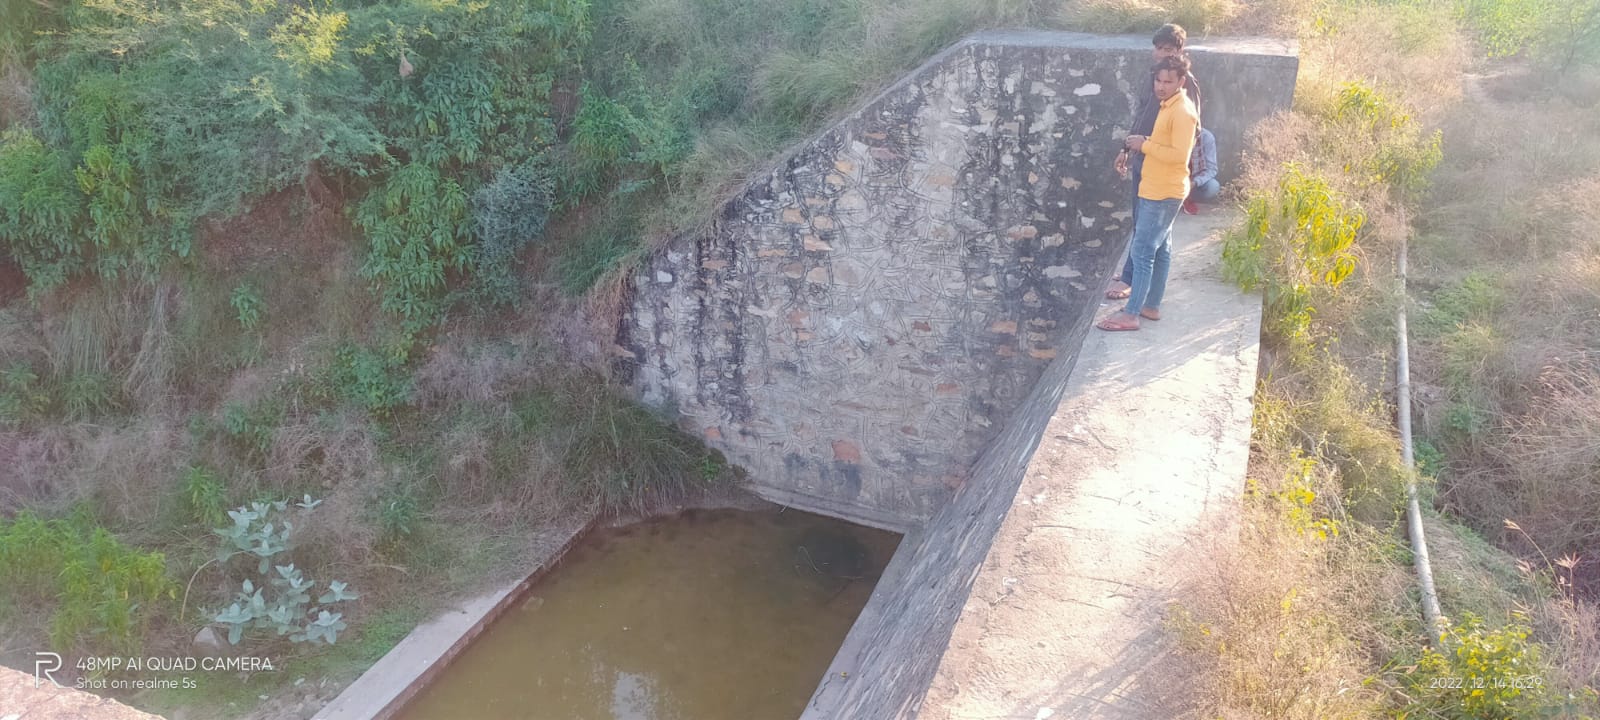 Ghuskala Check Dam